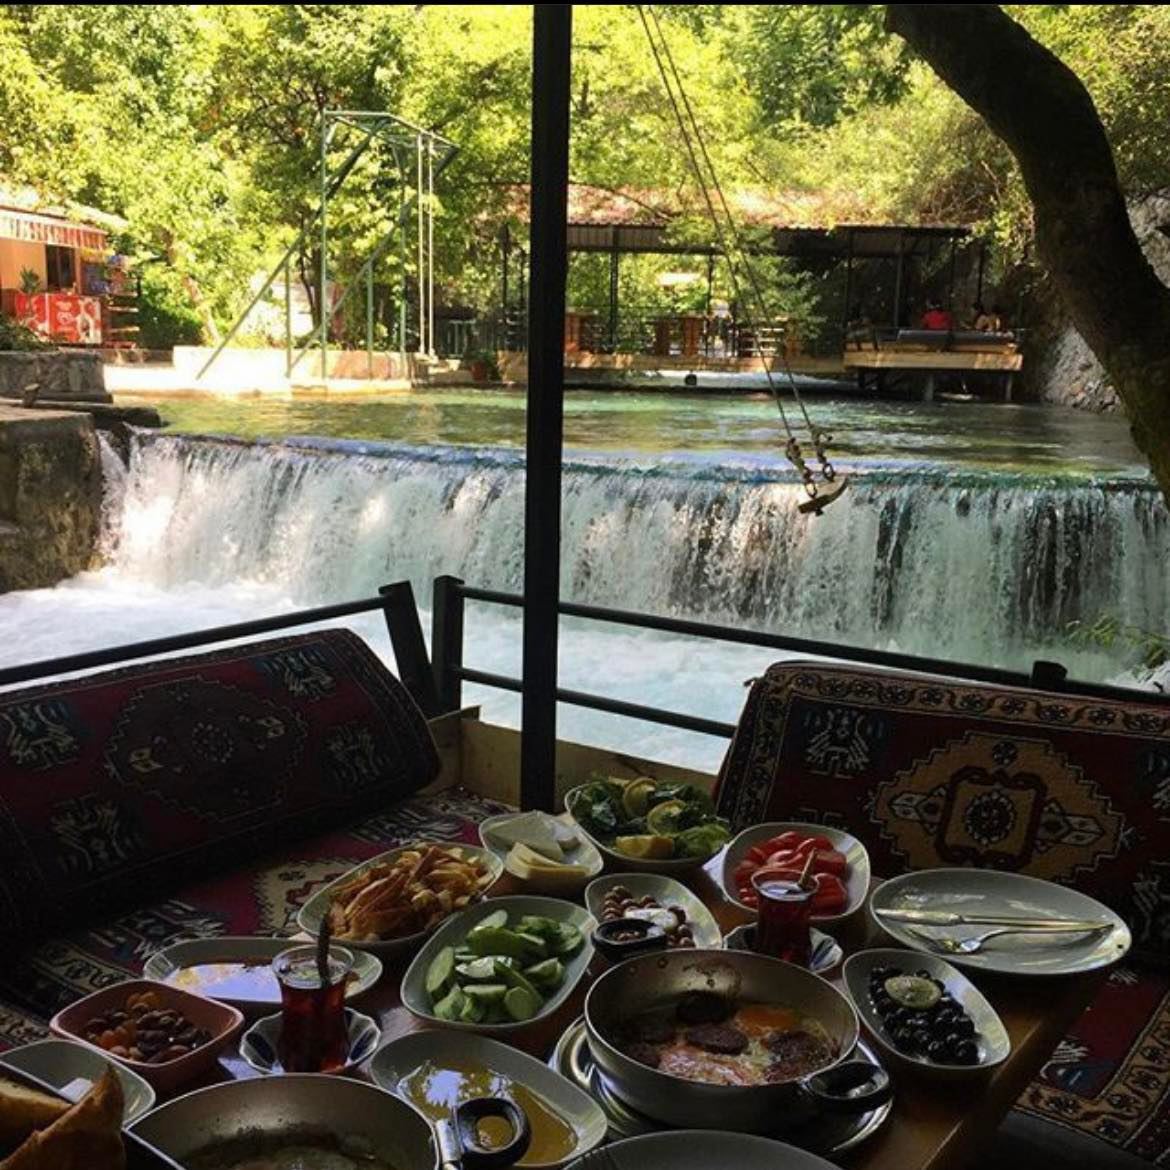 Turkey dine in a waterfall unique restaurants around the world